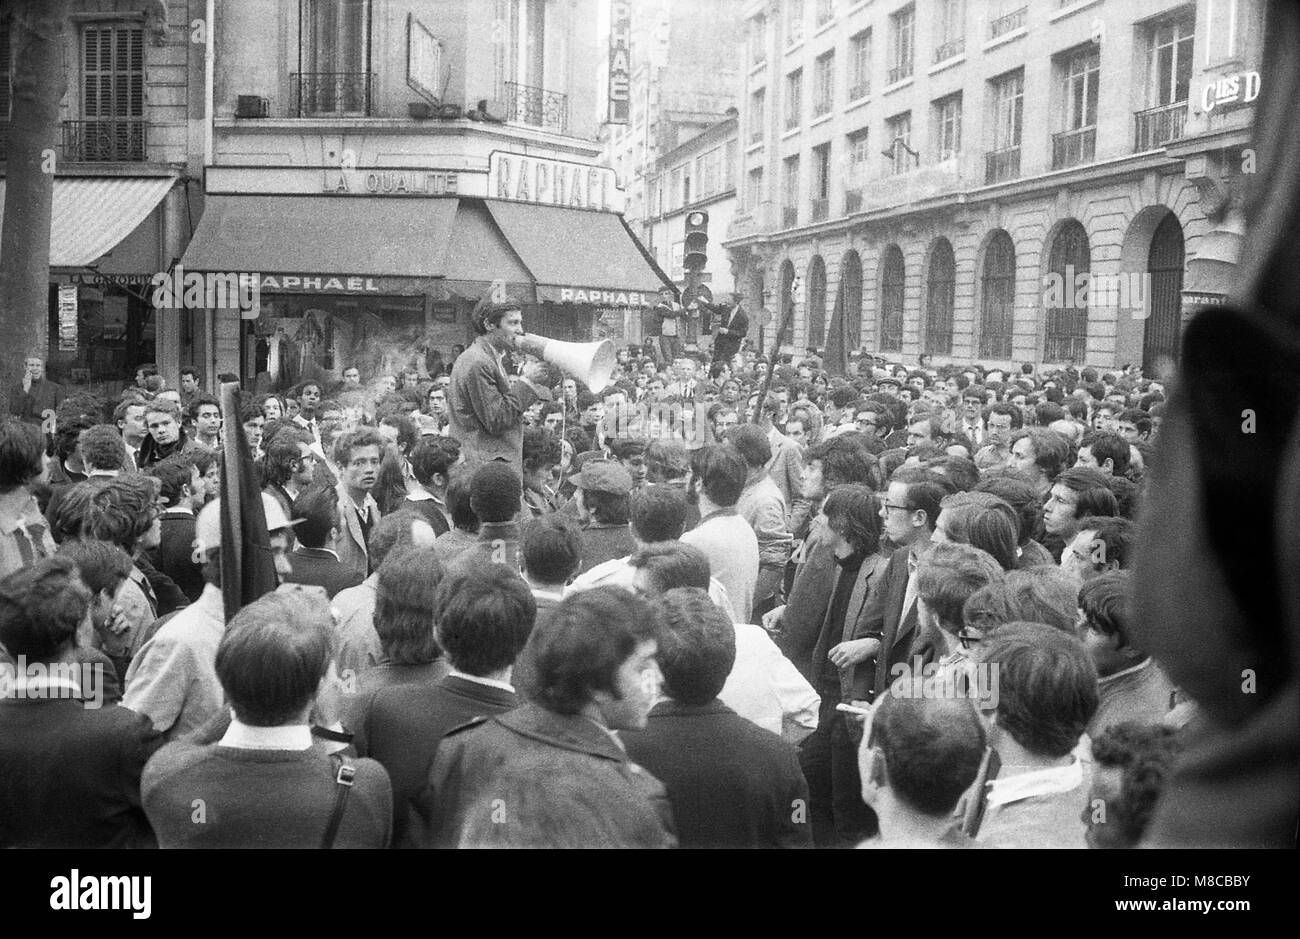 Philippe Gras / Le Pictorium - Mai 68 - 1968 - France / Ile-de-France (région) / Paris - Rassemblement à la gare Saint Lazare Banque D'Images